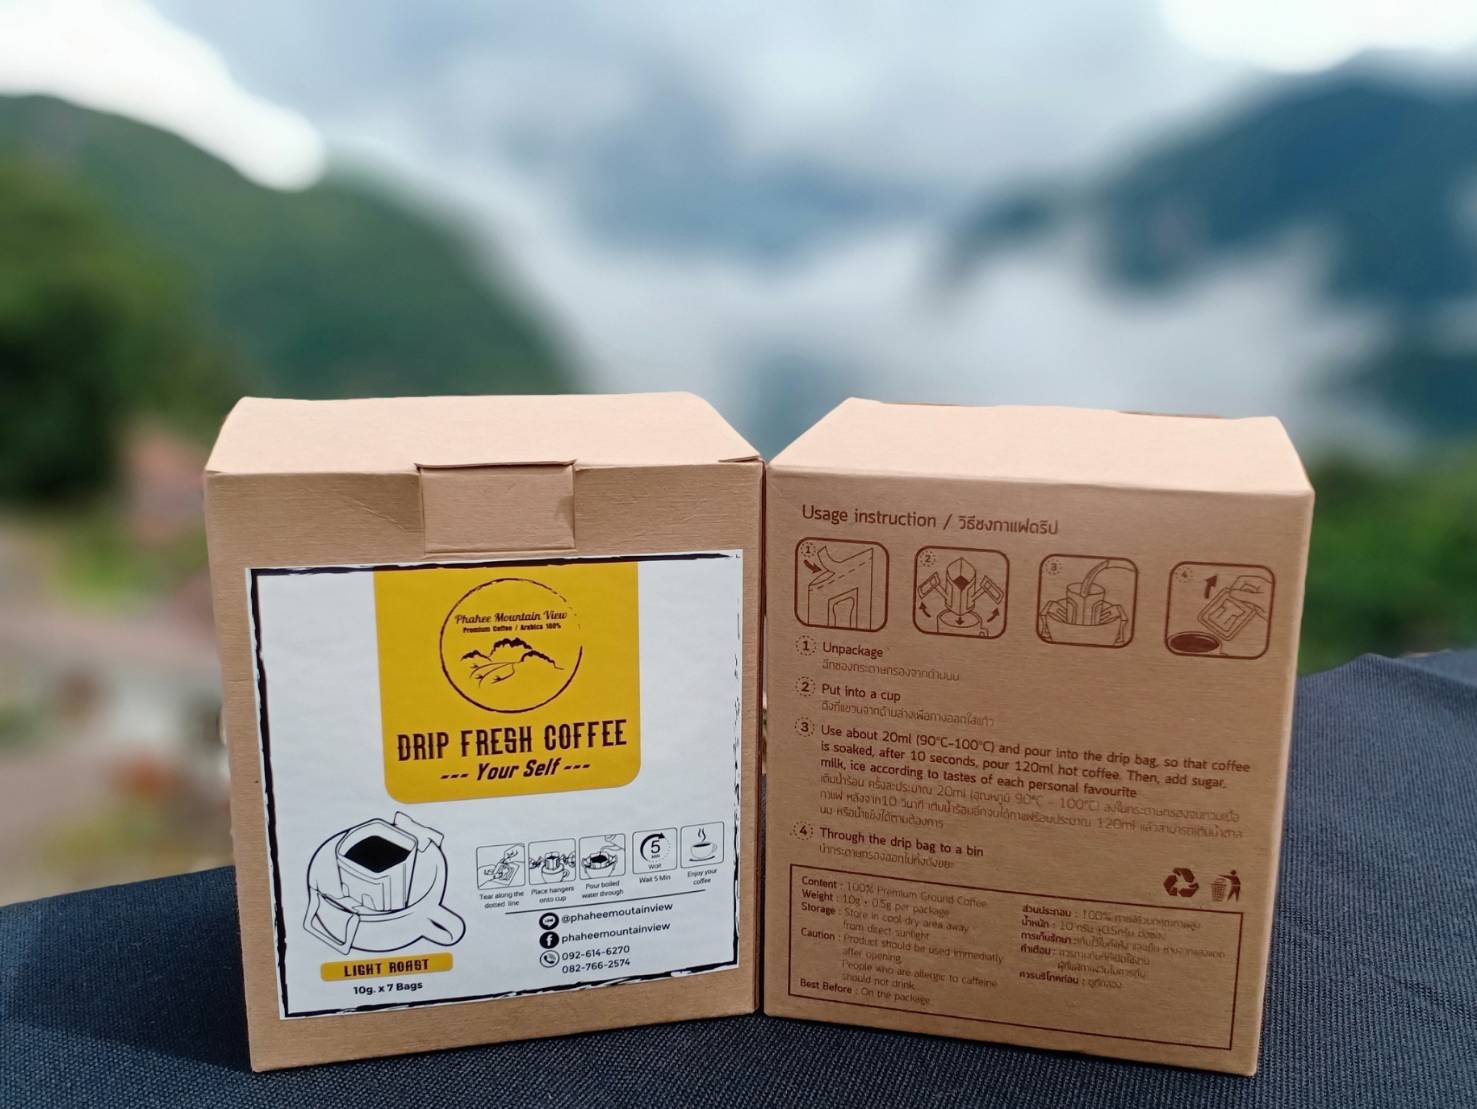 กาแฟสดดริปสำเร็จรูป(Drip Fresh Coffee) คั่วอ่อน (Light) Phahee Mountain View Coffee กาแฟผาฮี้ พันธุ์อราบิก้า 100%(Singel Origin) แบบกล่อง!!!